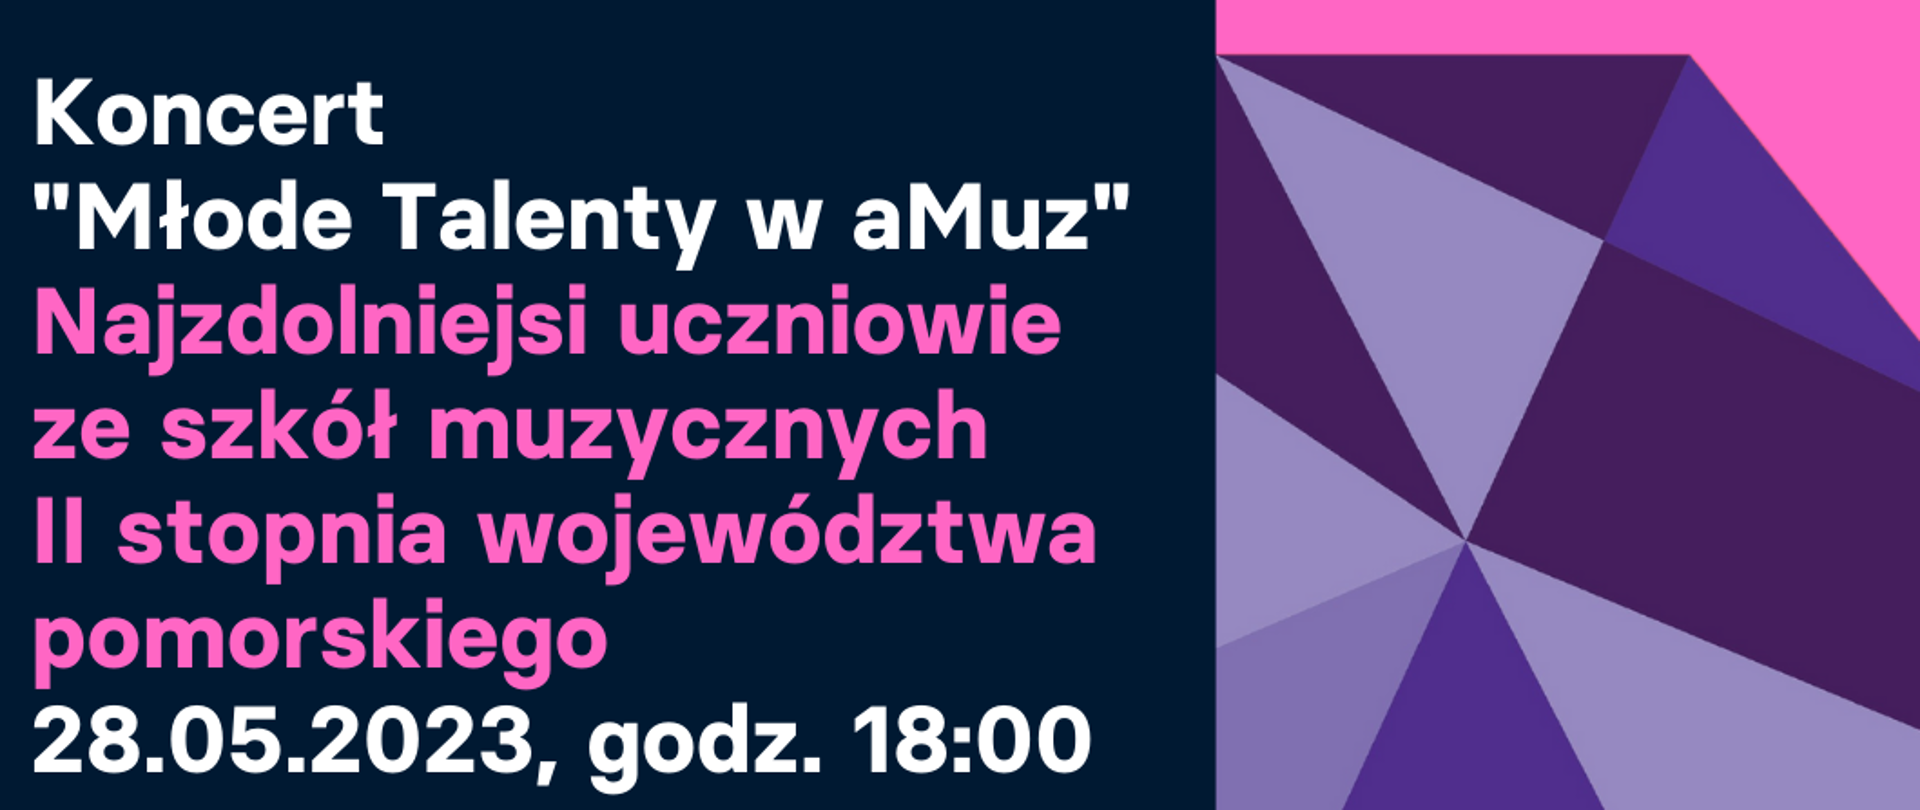 Plakat informacyjny o koncercie Młode Talenty w aMuz, który odbędzie się 28 maja 2023 r o godzinie 18.00 w Akademii Muzycznej w Gdańsku